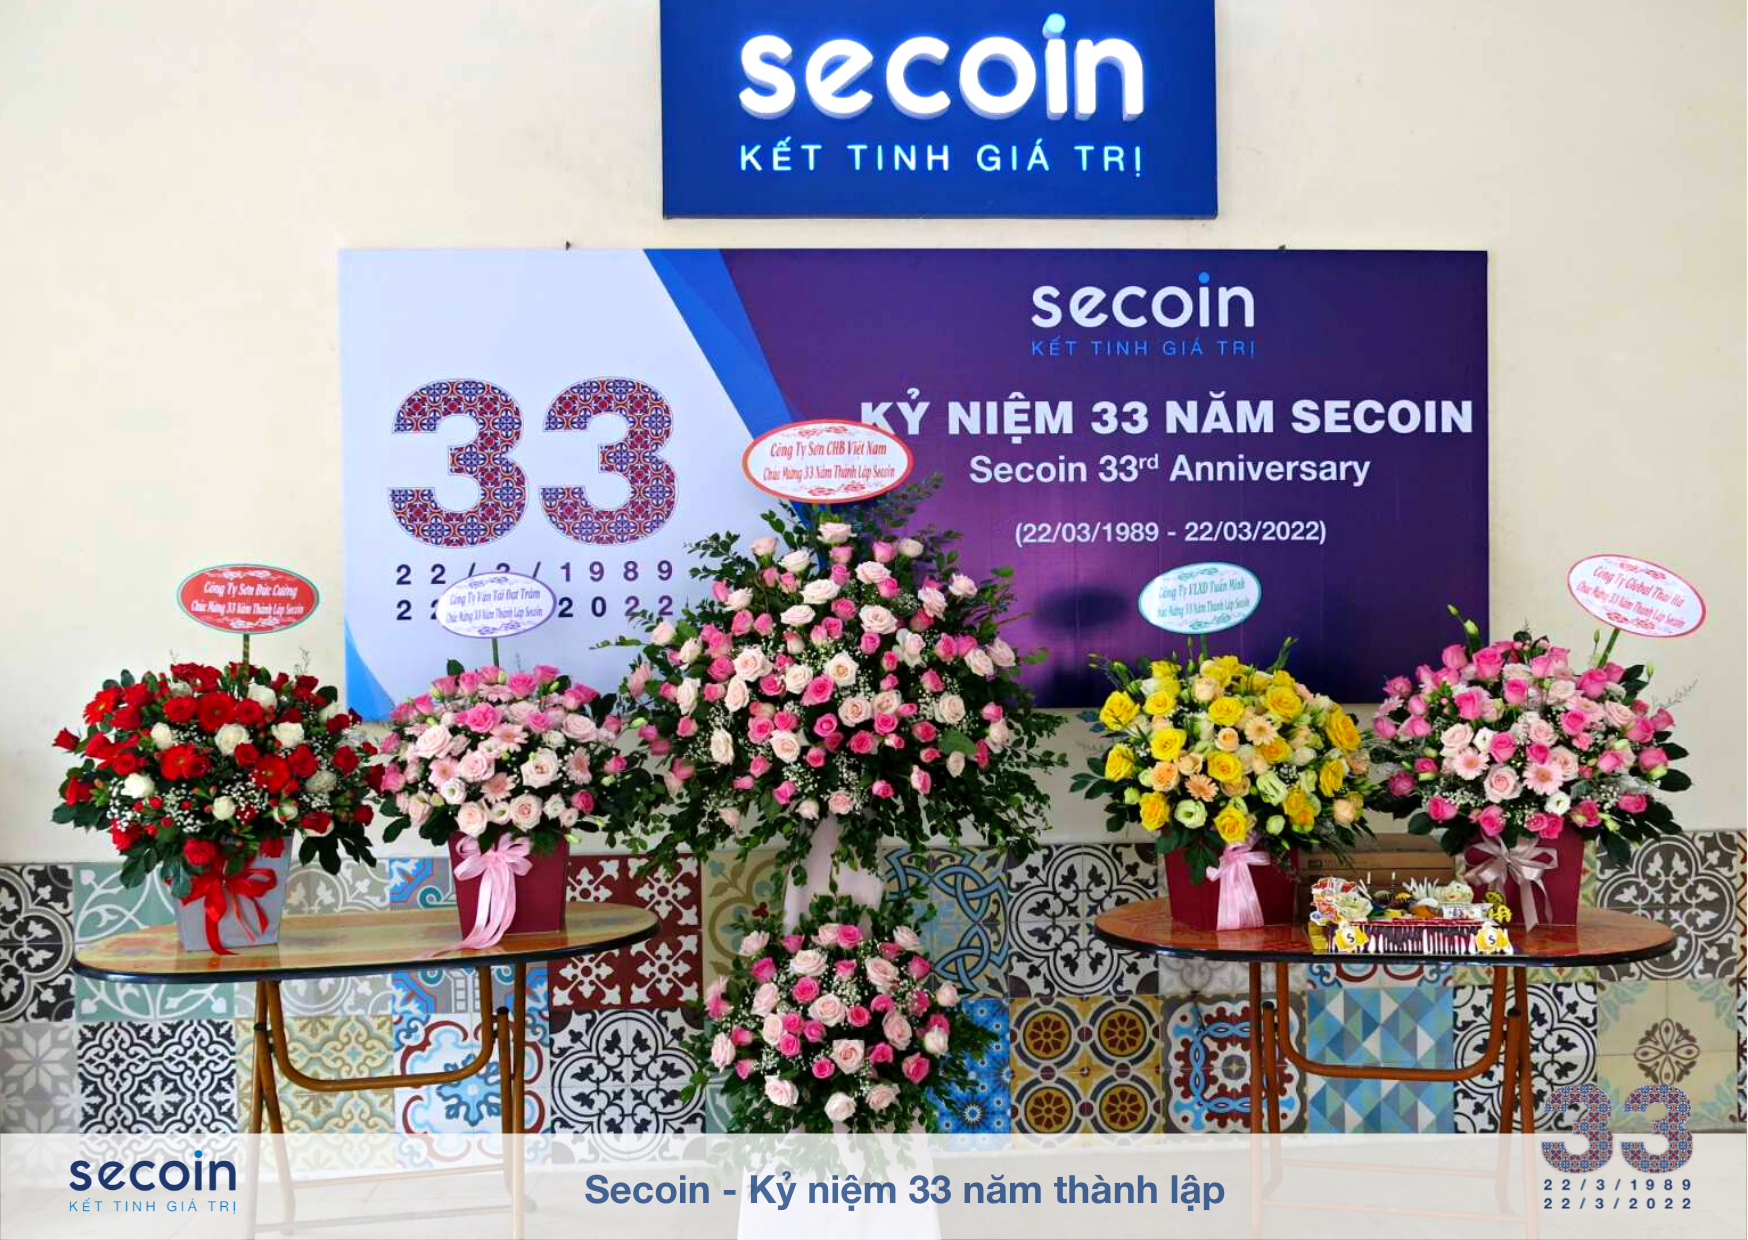 Secoin - Kỷ niệm 33 năm thành lập